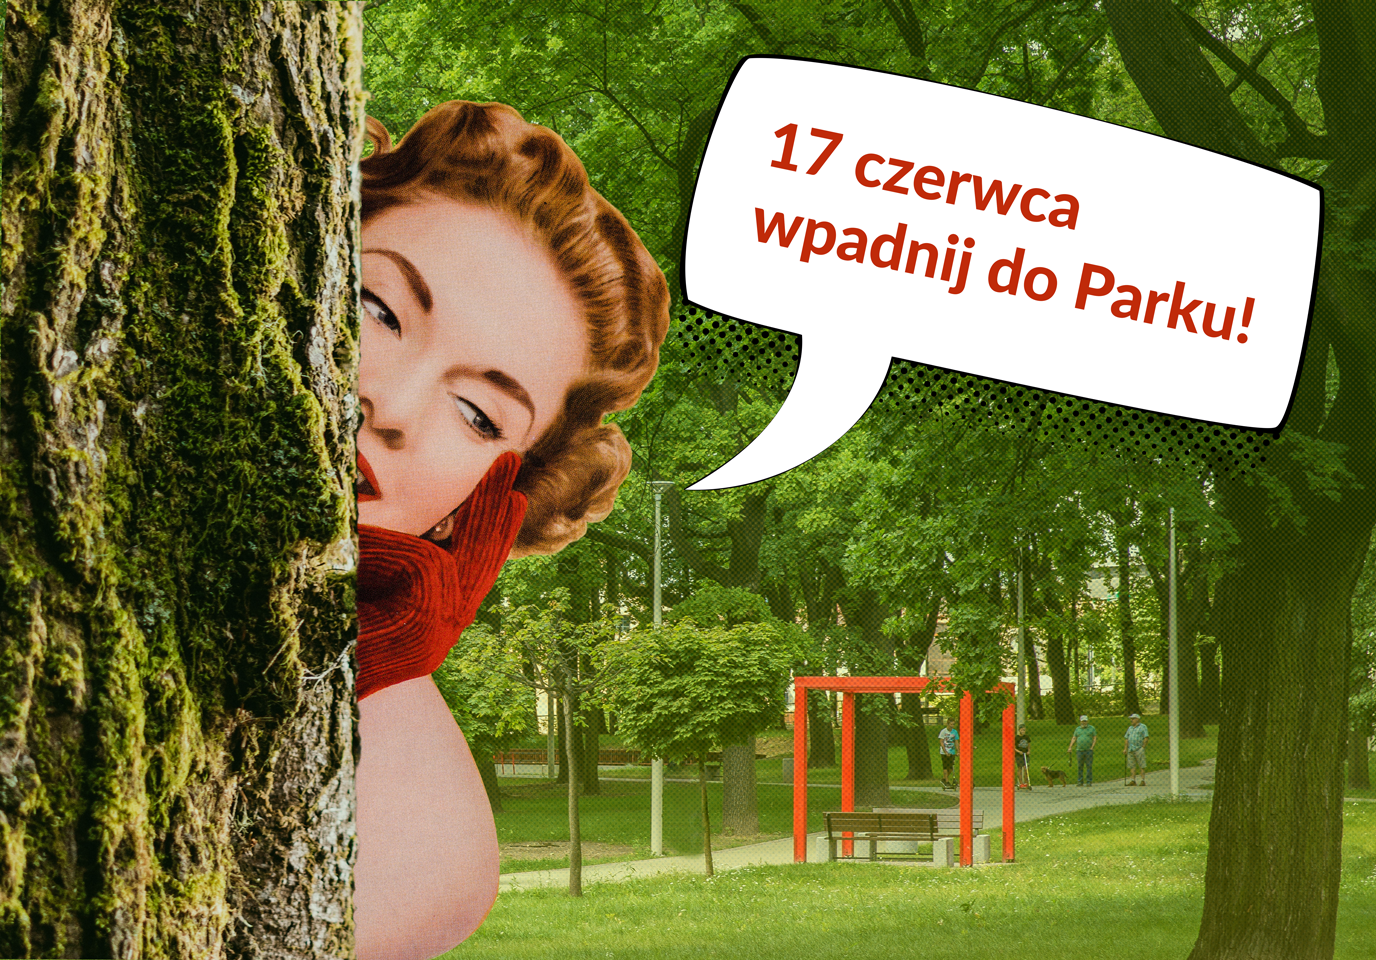 Grafika - zza pnia drzewa wychyla się rudowłosa dziewczyna w retro-stylizacji. W komiksowym dymku: 17 czerwca, wpadnij do parku.